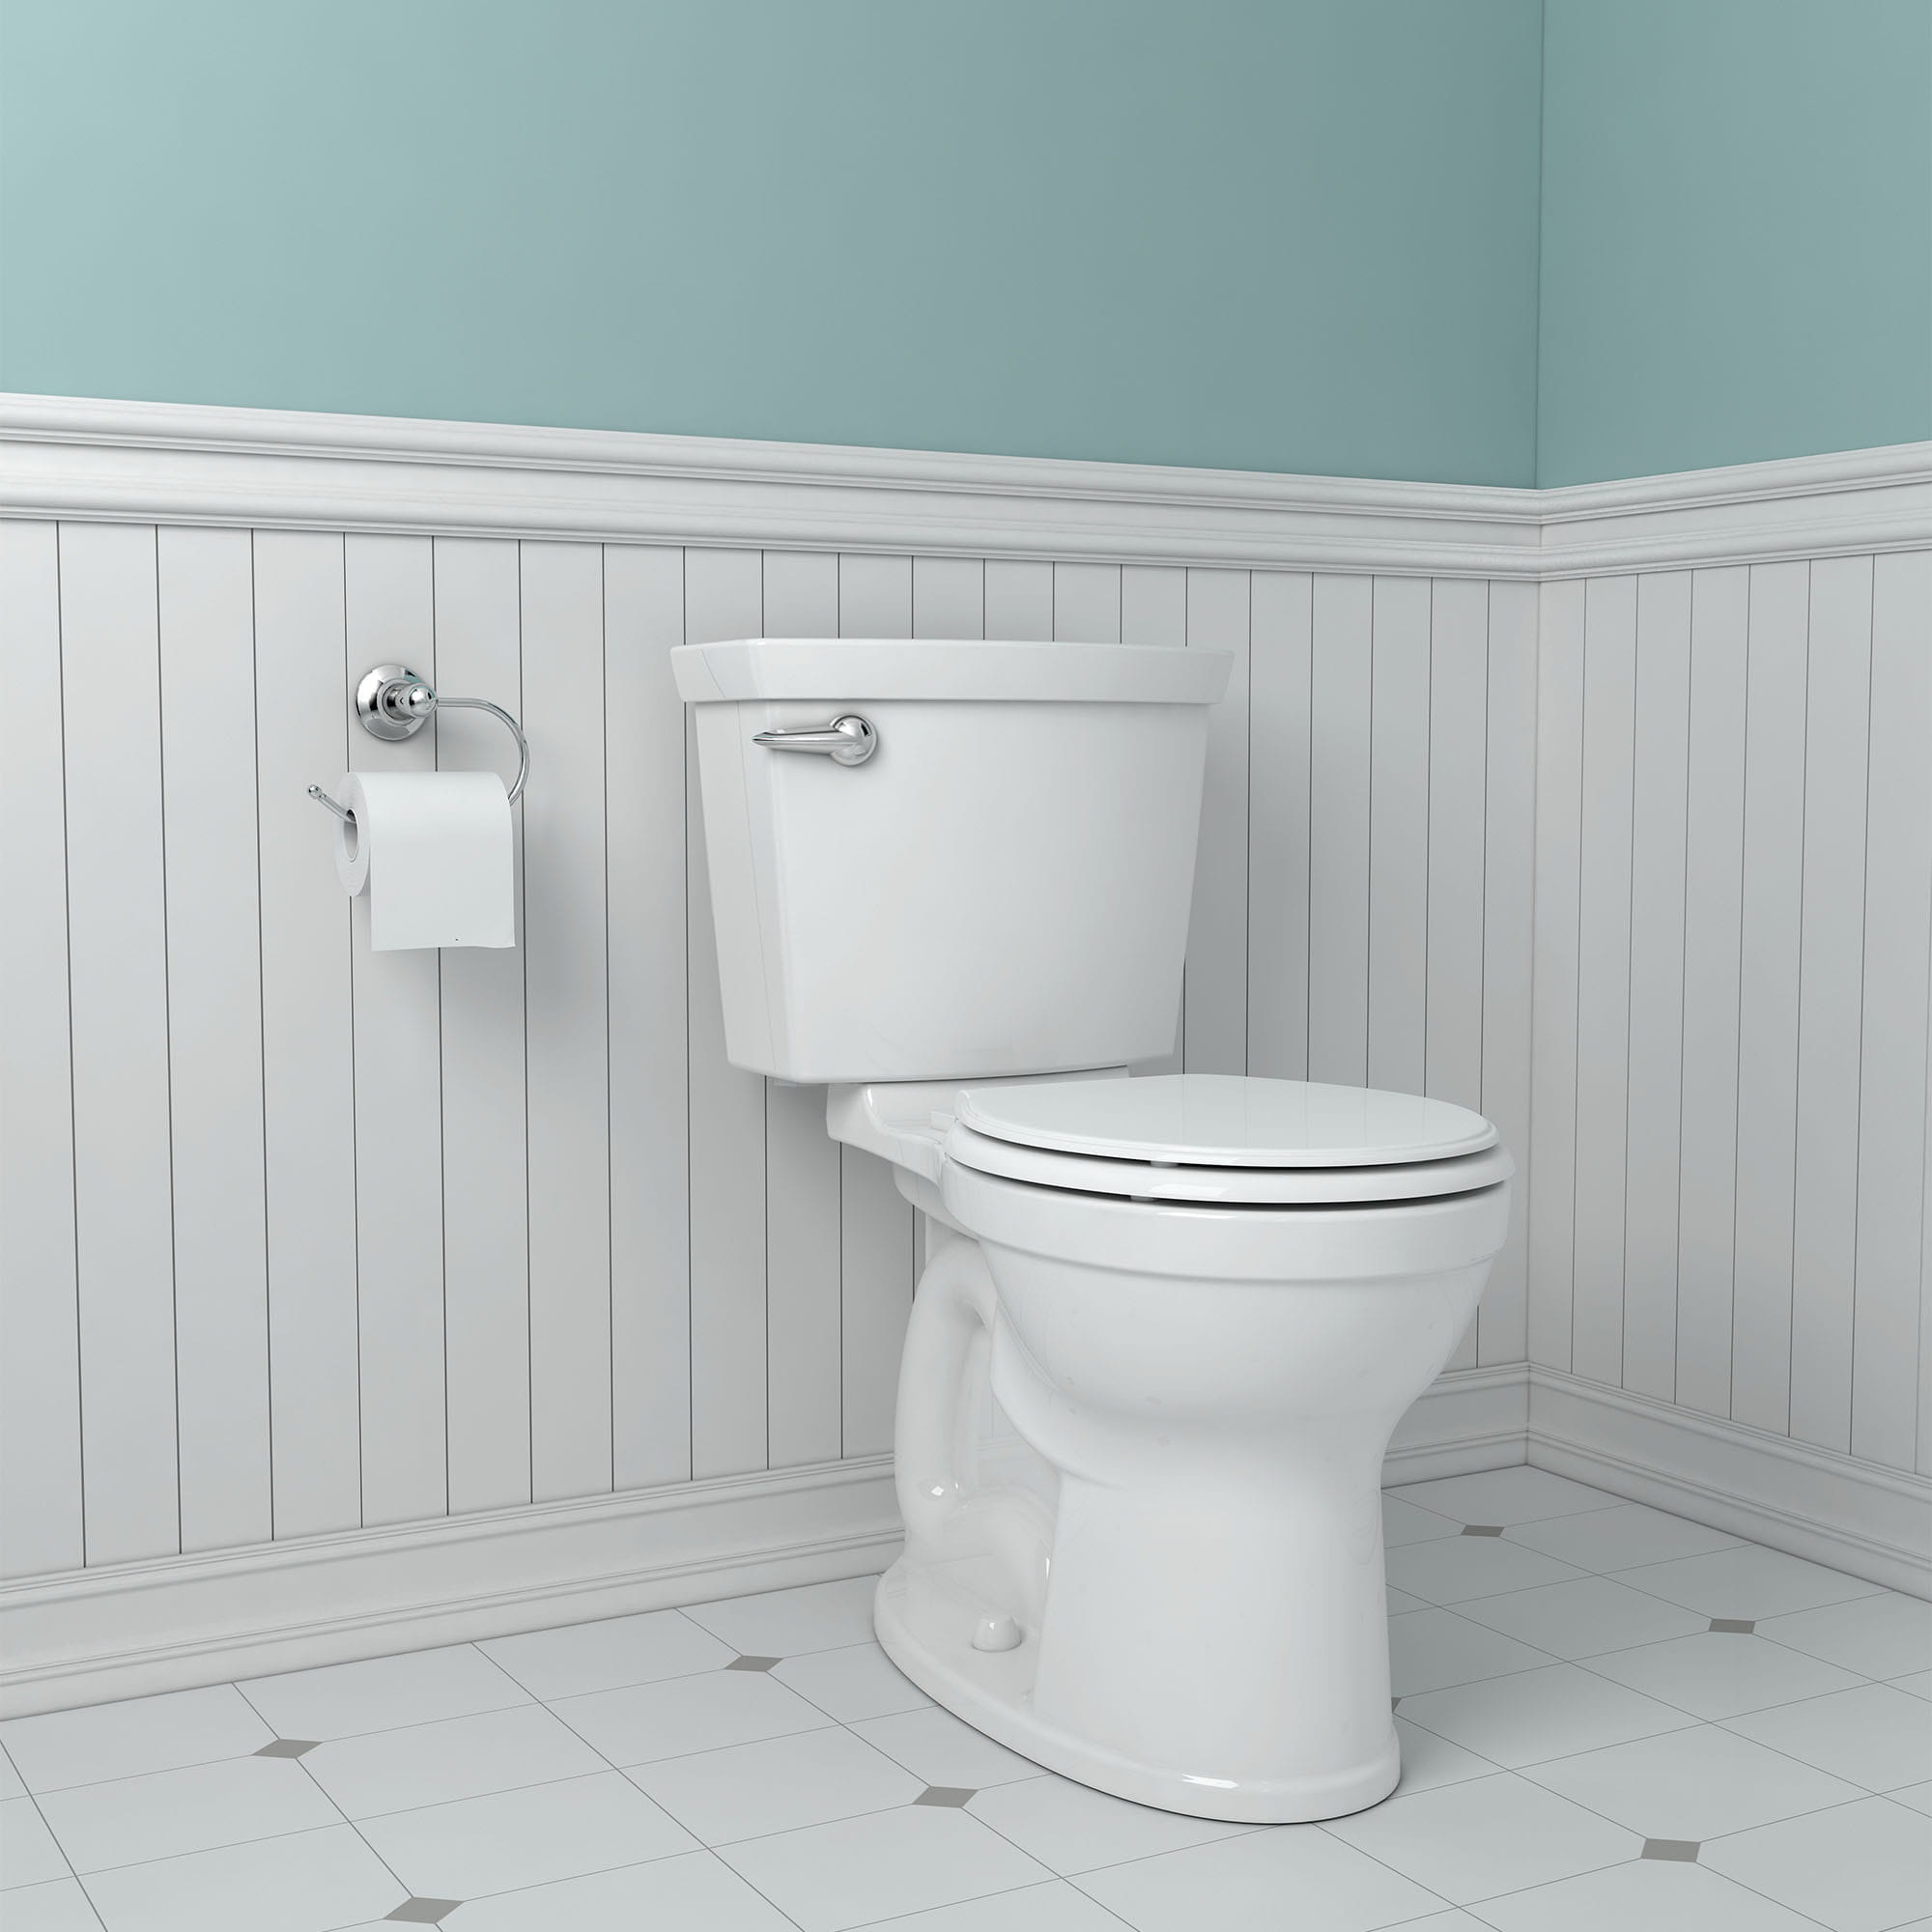 Elegant Wood Round Toilet Seat Slow Closed Soft Quiet Close Silent Bathroom NEW 